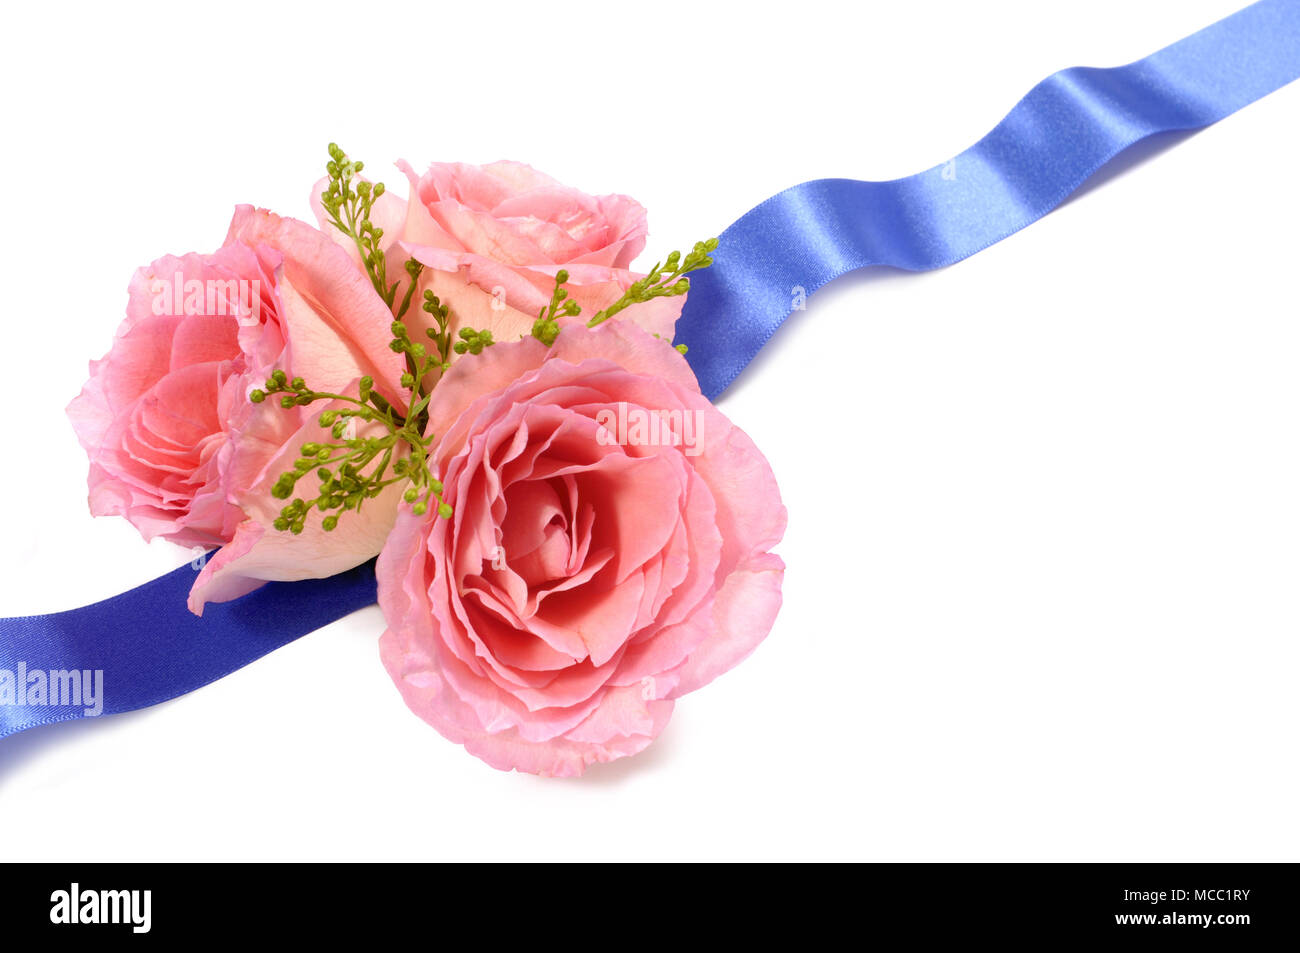 Décoration florale à base de roses et ruban de satin bleu Photo Stock -  Alamy